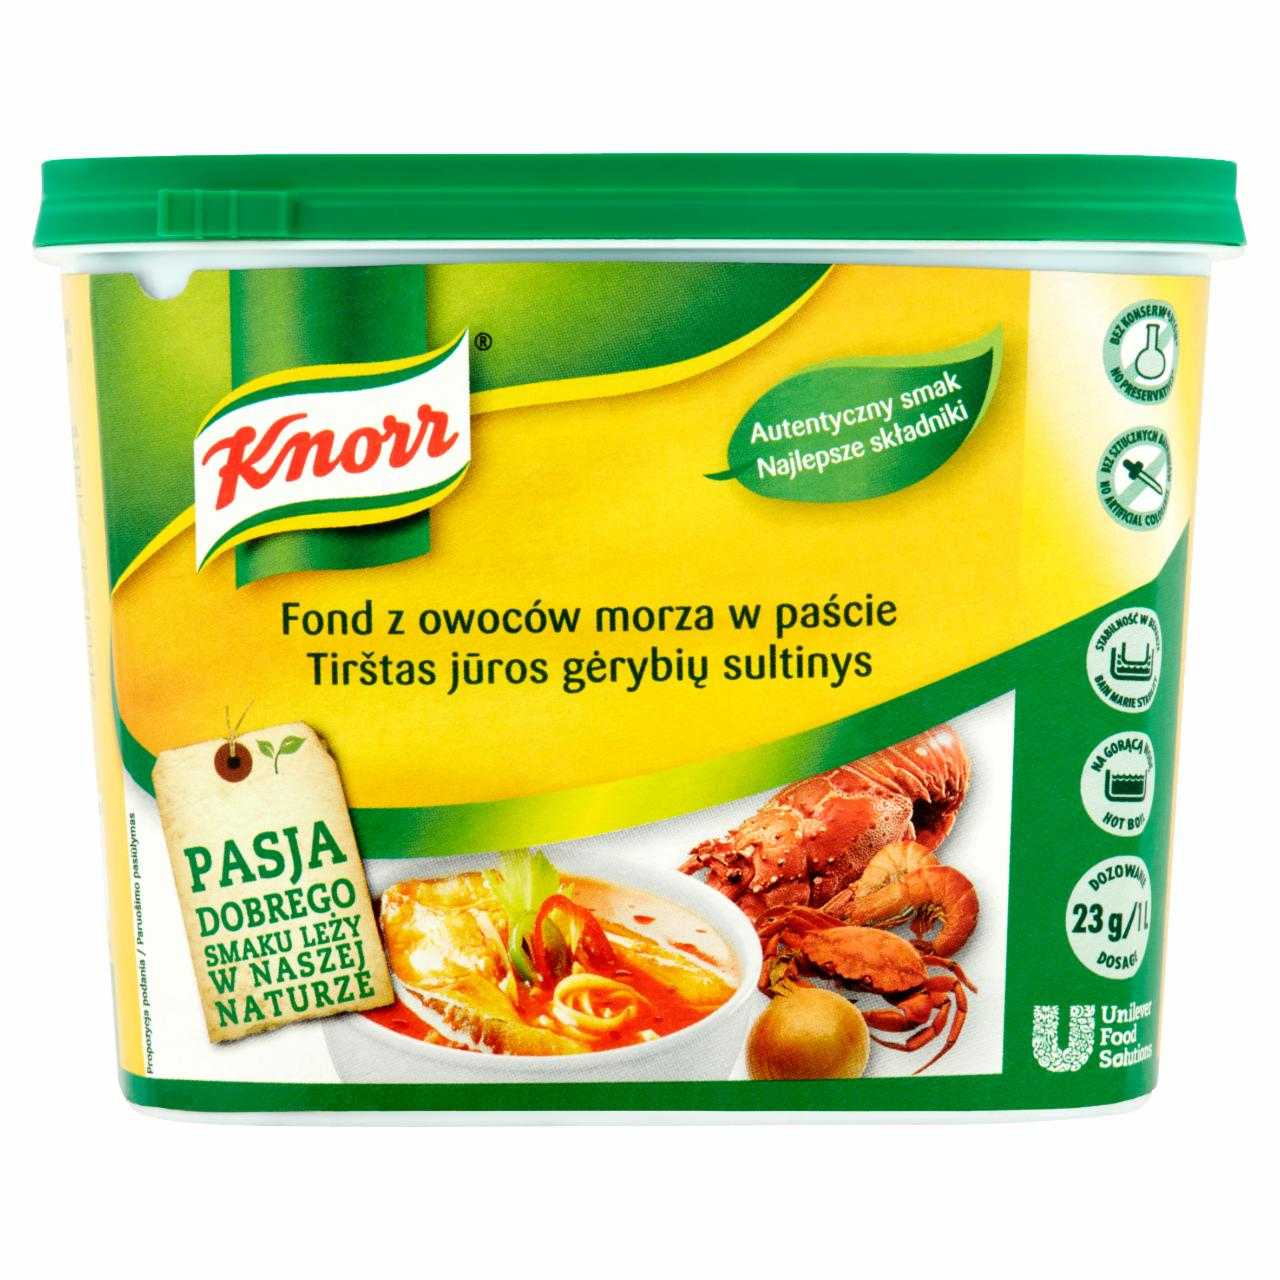 Zdjęcia - Knorr Fond z owoców morza w paście 1 kg